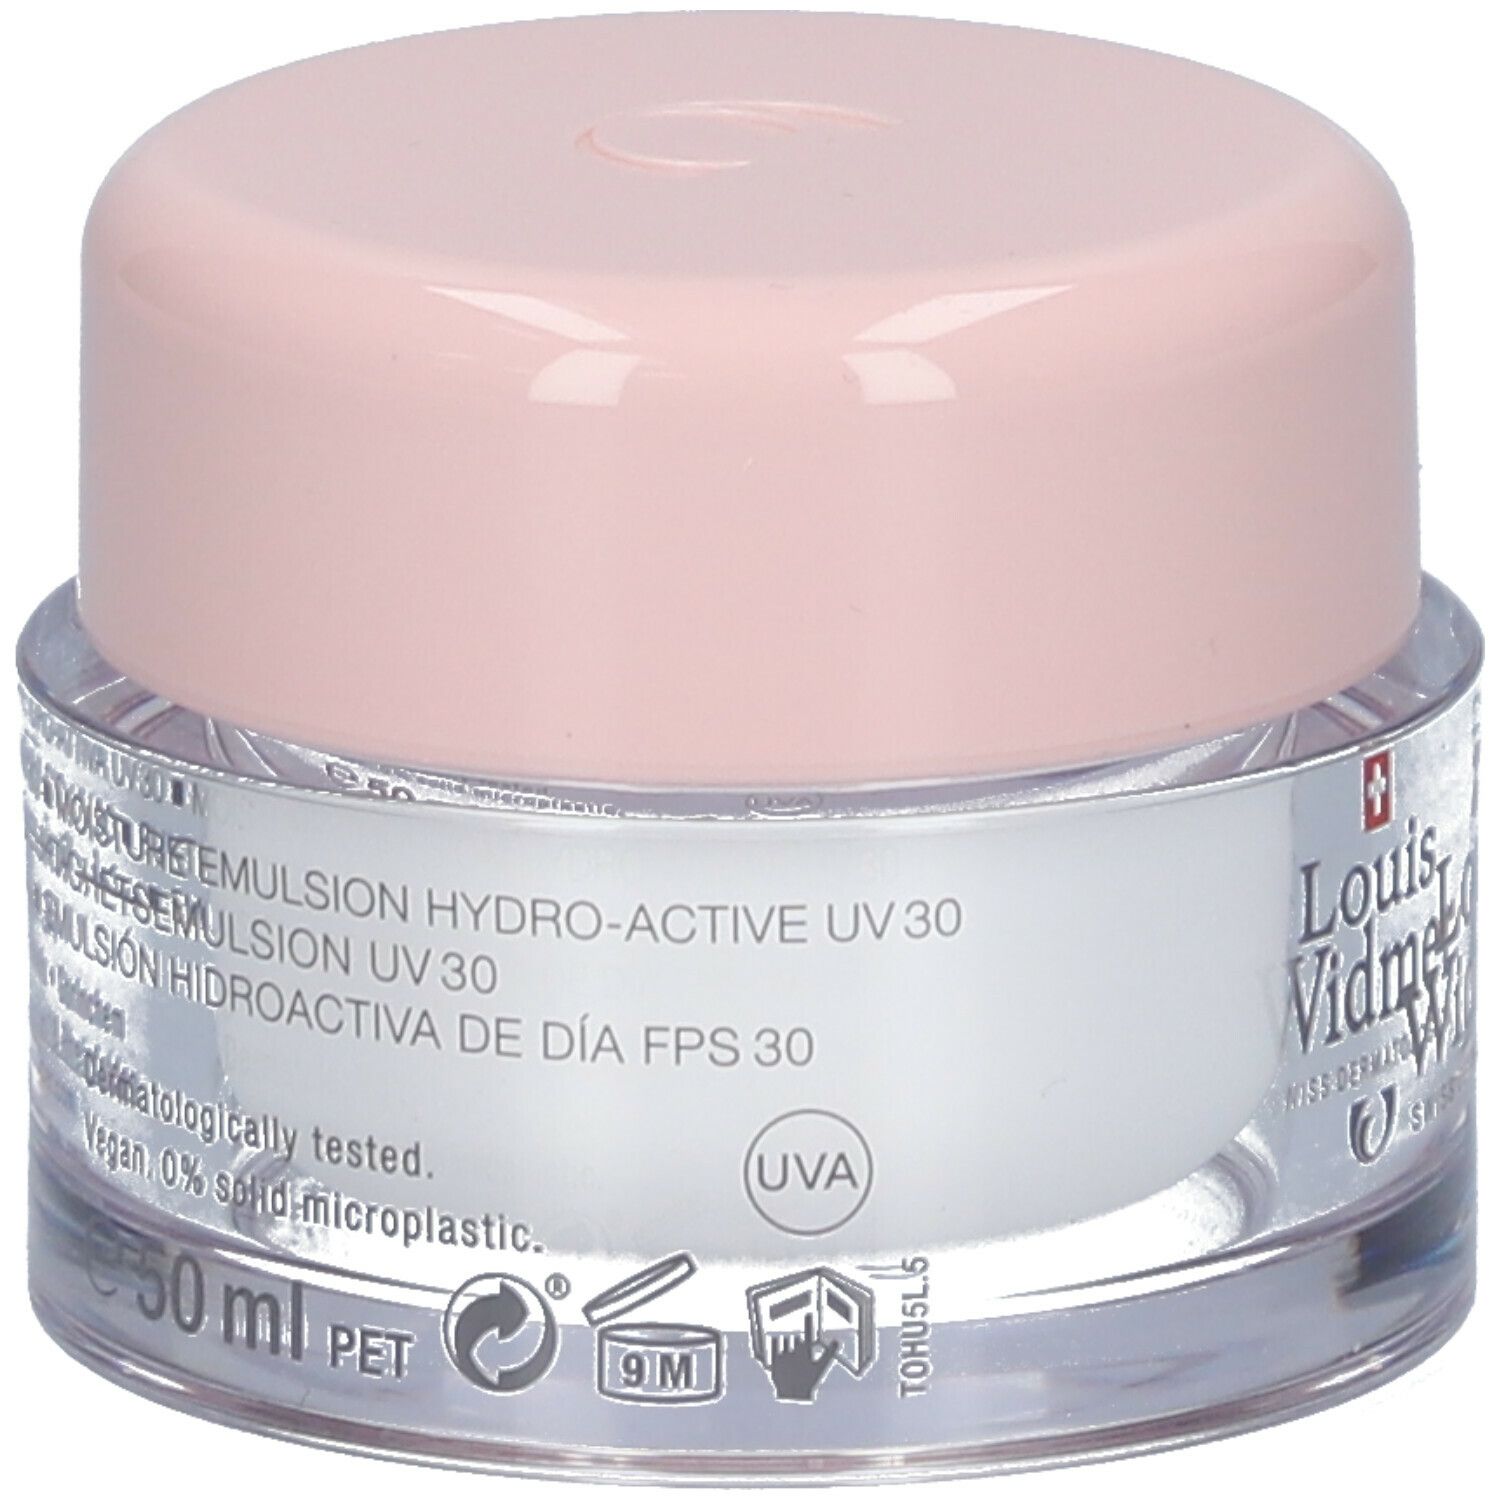 Louis Widmer Emulsion Hydro-Active UV 30 légèrement parfumé